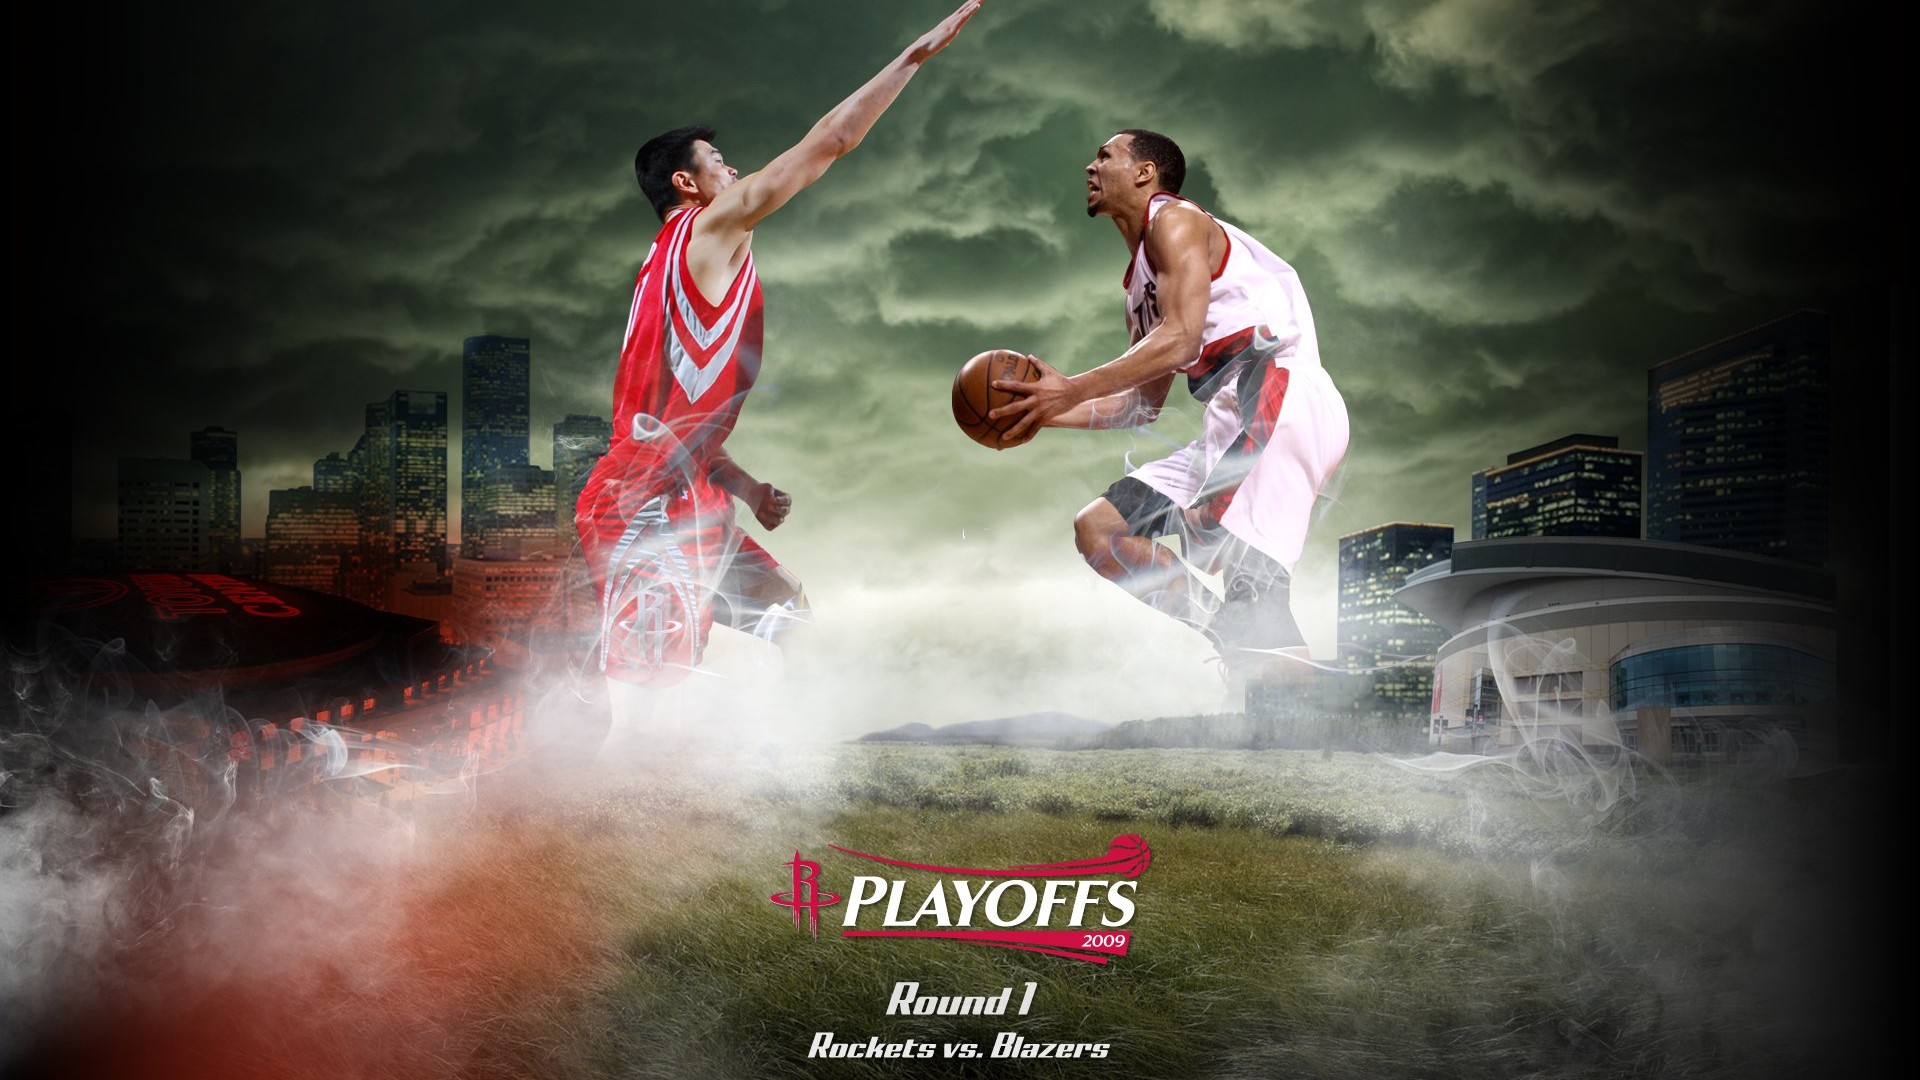 NBA Houston Rockets 2009 fondos de escritorio de los playoffs #1 - 1920x1080